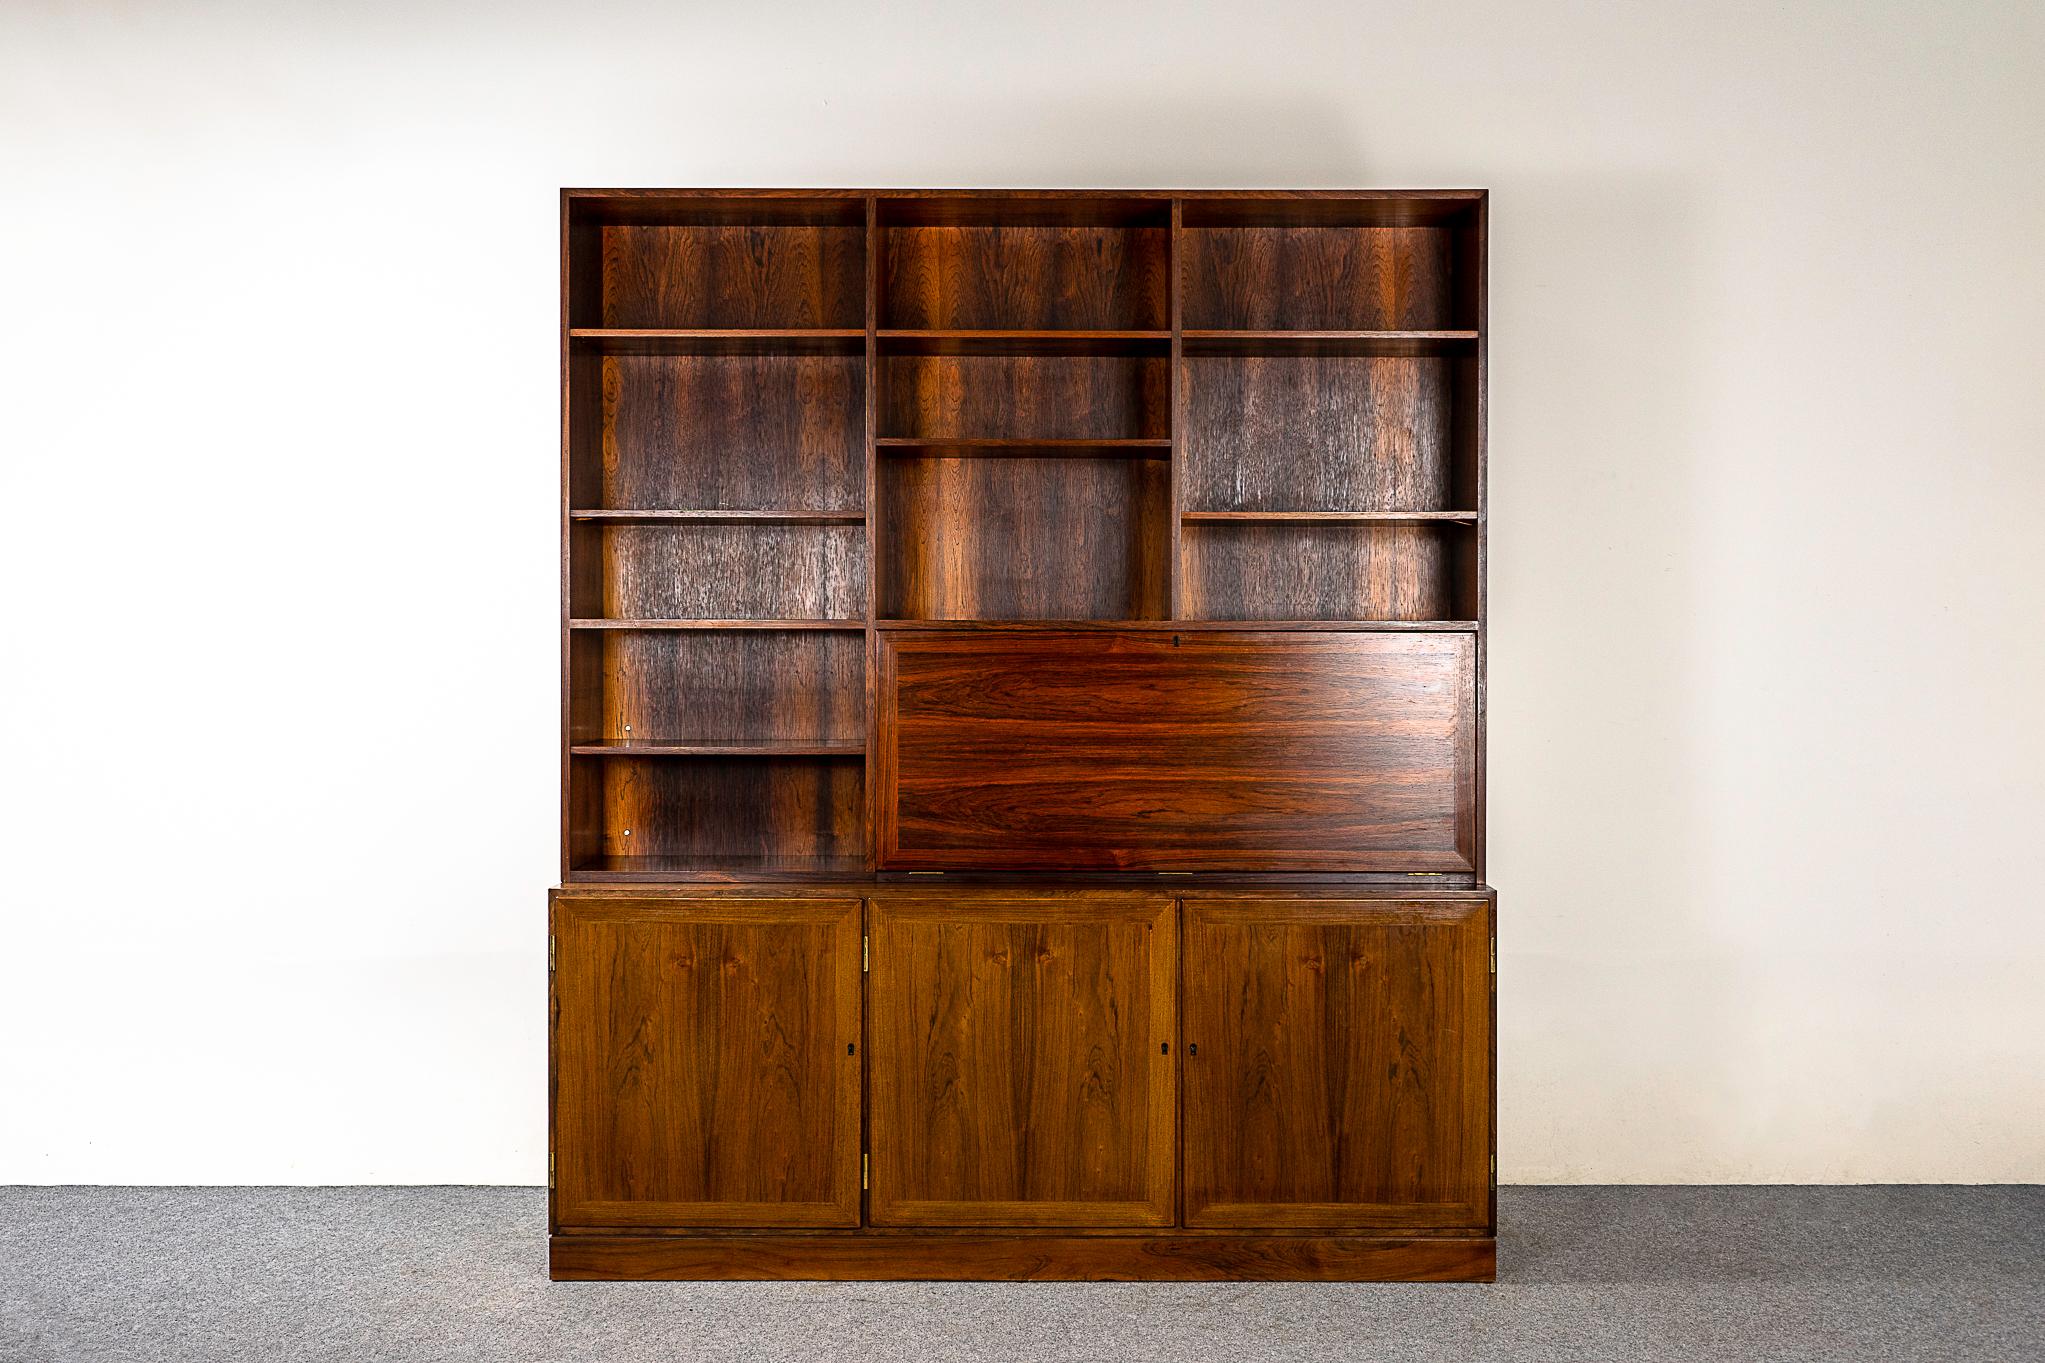 Armoire bibliothèque danoise en bois de rose par Kai Winding, vers les années 1960. Le design très fonctionnel combine des étagères ouvertes, des armoires basses et un bureau rabattable avec un intérieur aménagé.

Veuillez vous renseigner sur les